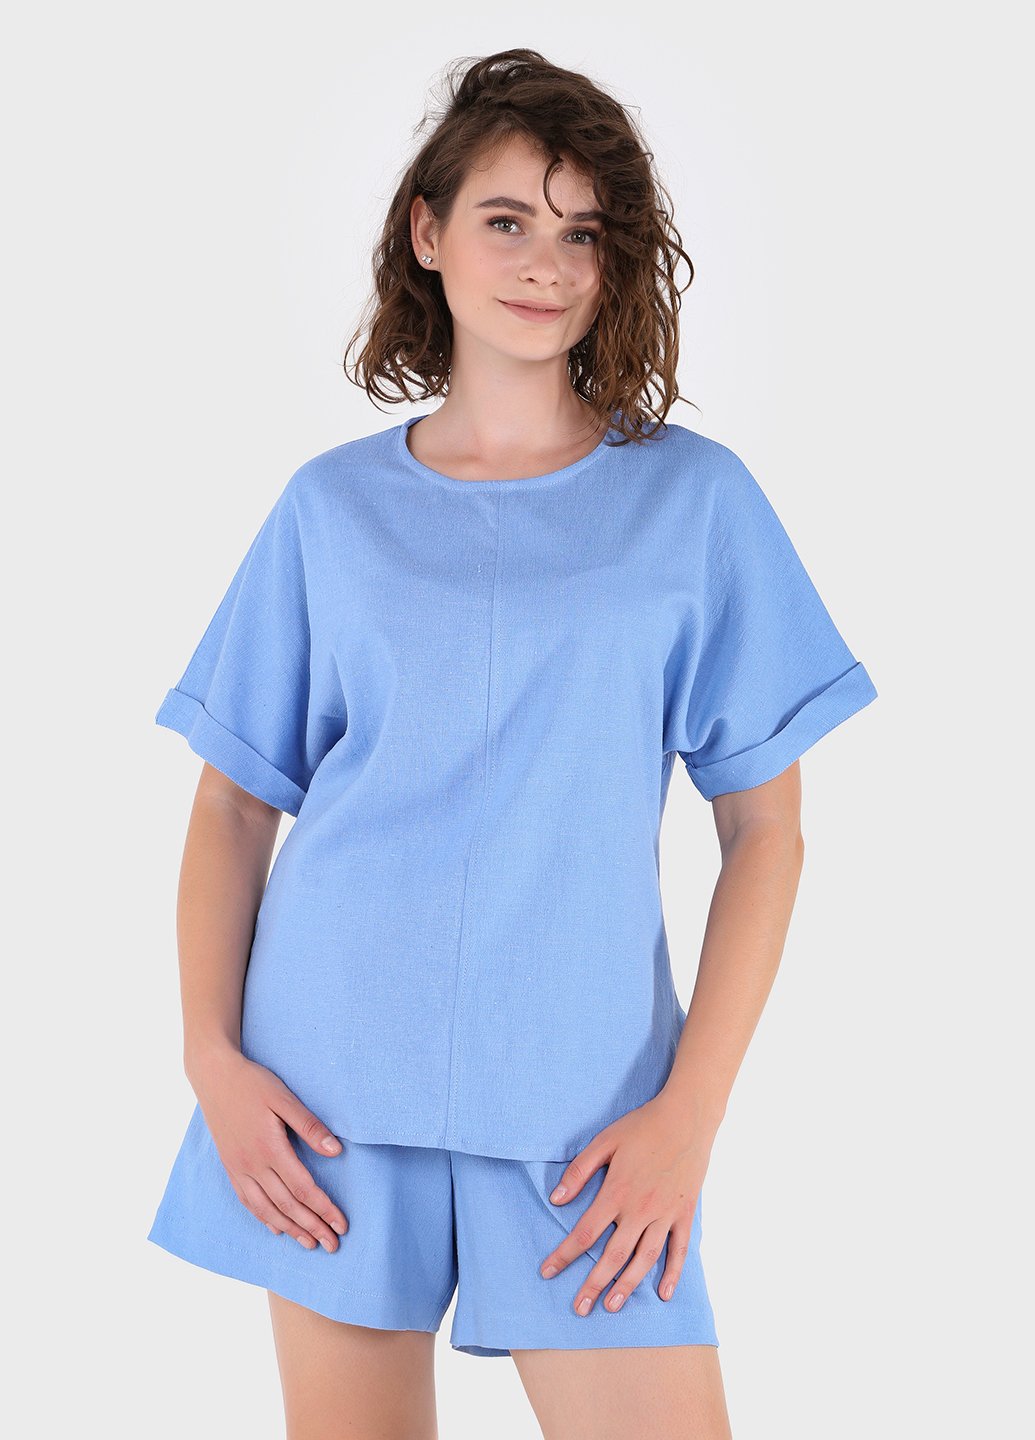 Купить Оверсайз льняная футболка женская голубого цвета Merlini Лацио 800000036, размер 42-44 в интернет-магазине